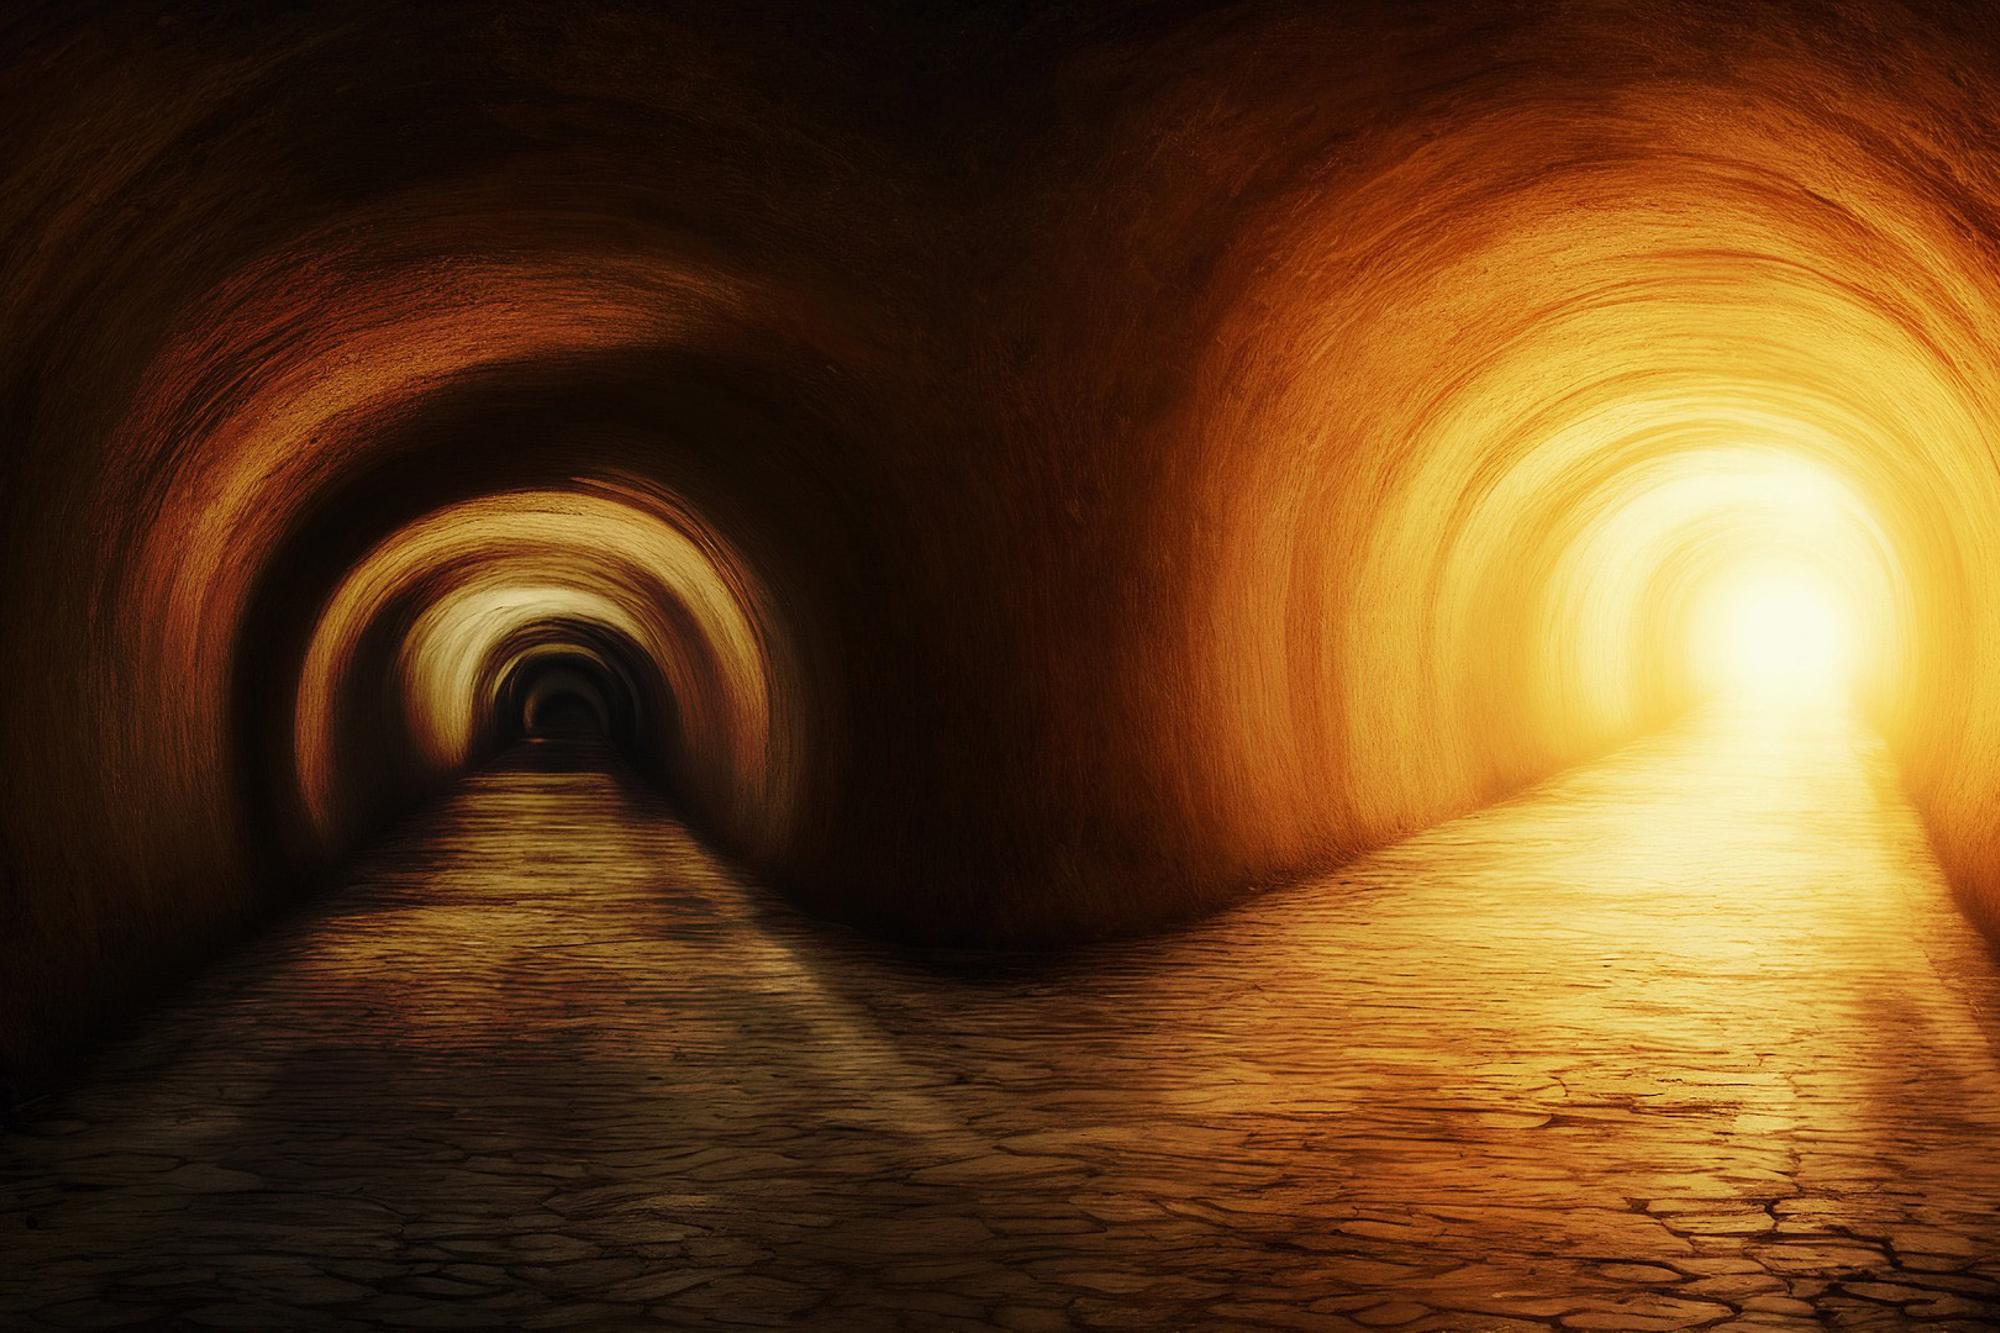 Två tunnlar bredvid varandra - i den ena är det ljust och i den andra är det mörkt.